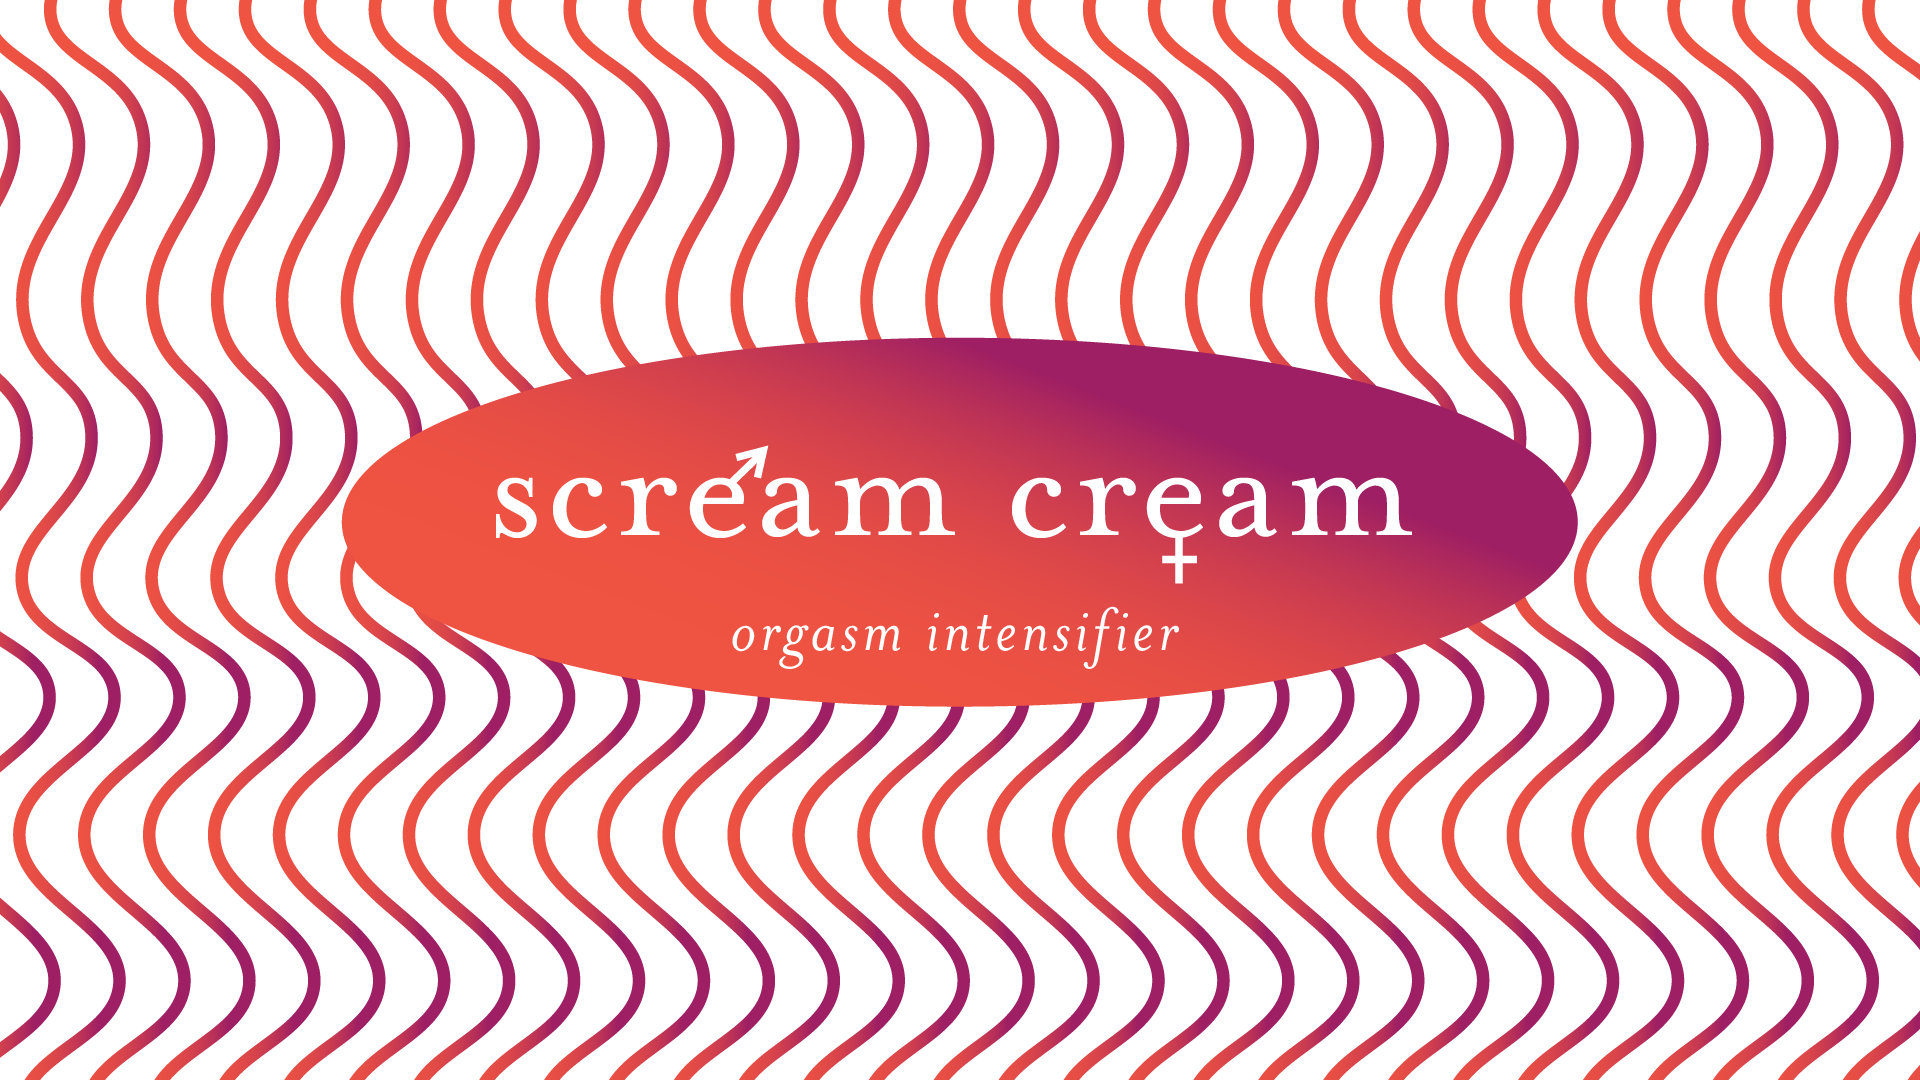 scream cream